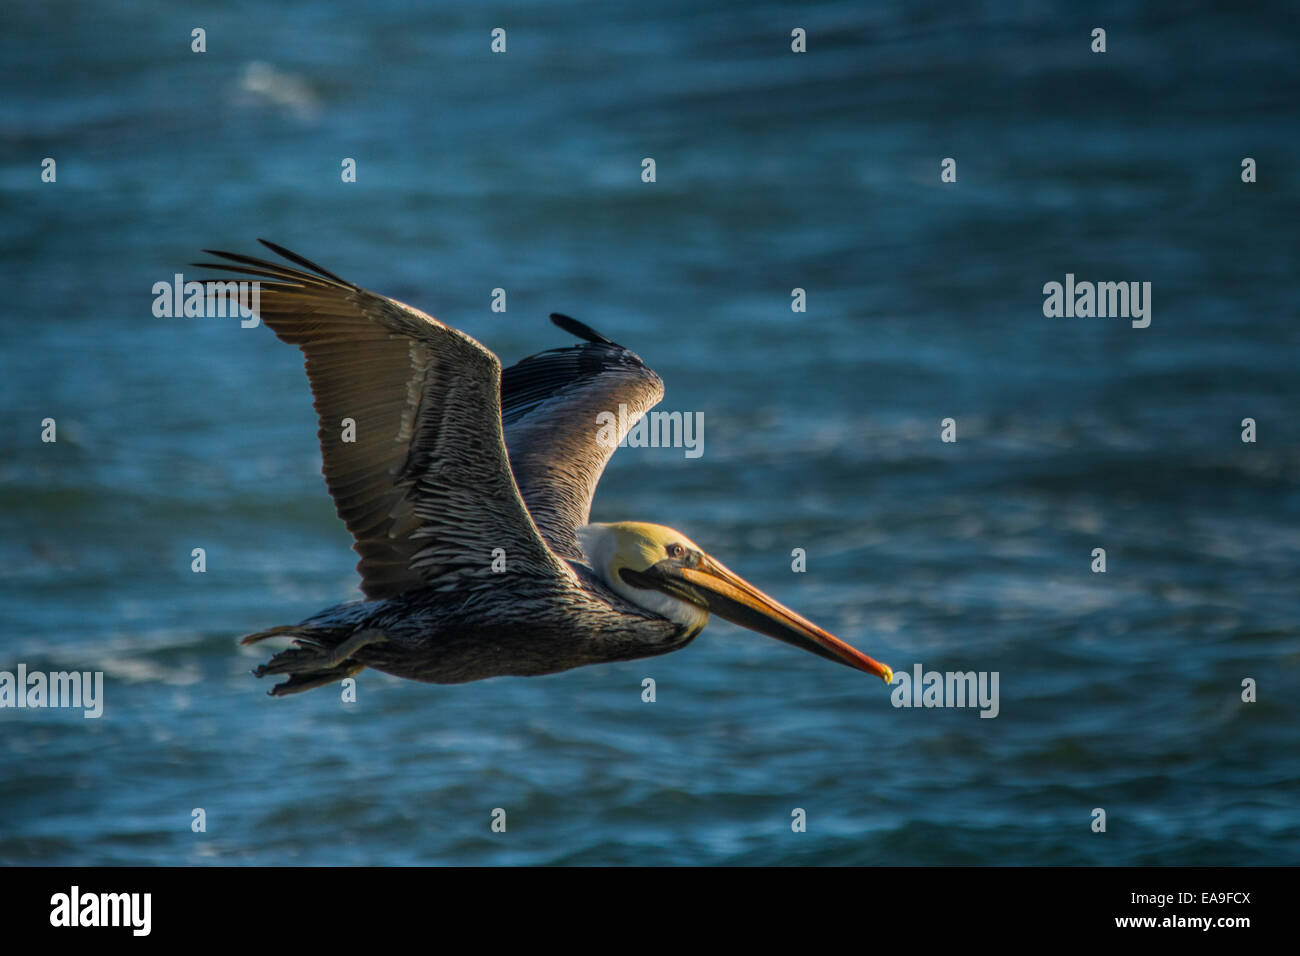 California Brown Pelican in flight over the ocean. Stock Photo